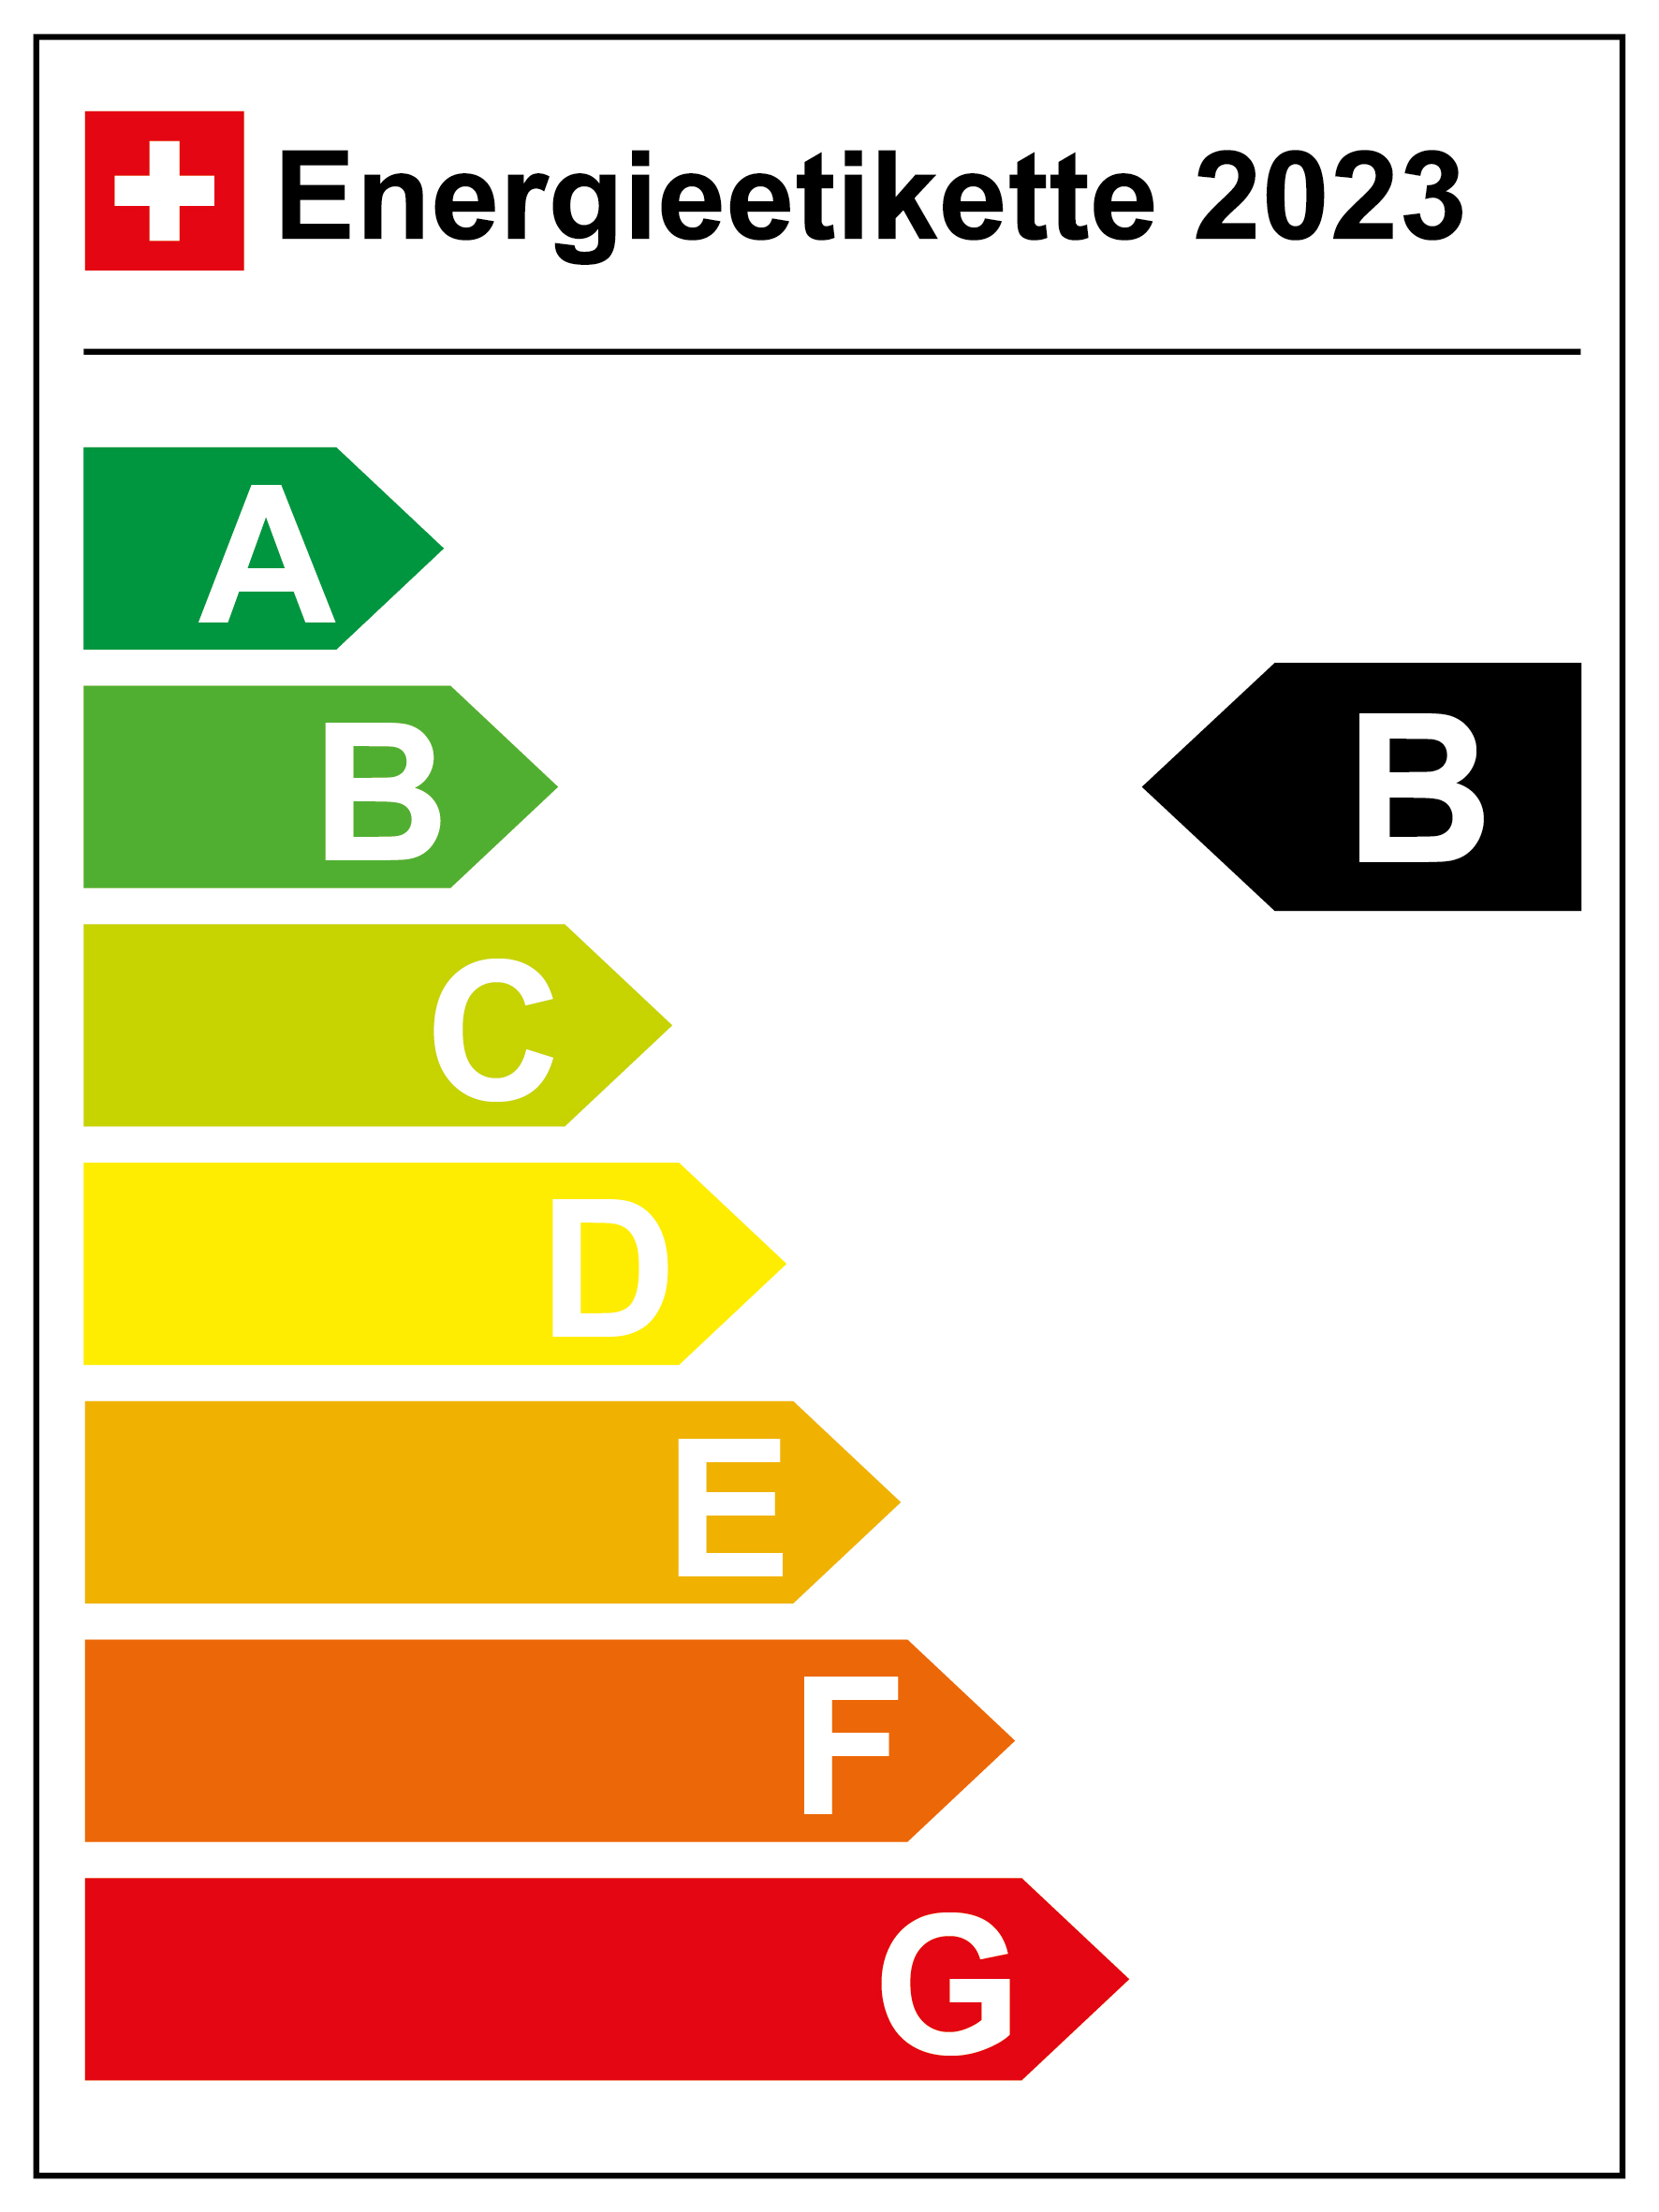 Energieeffizienz-Kategorie: B